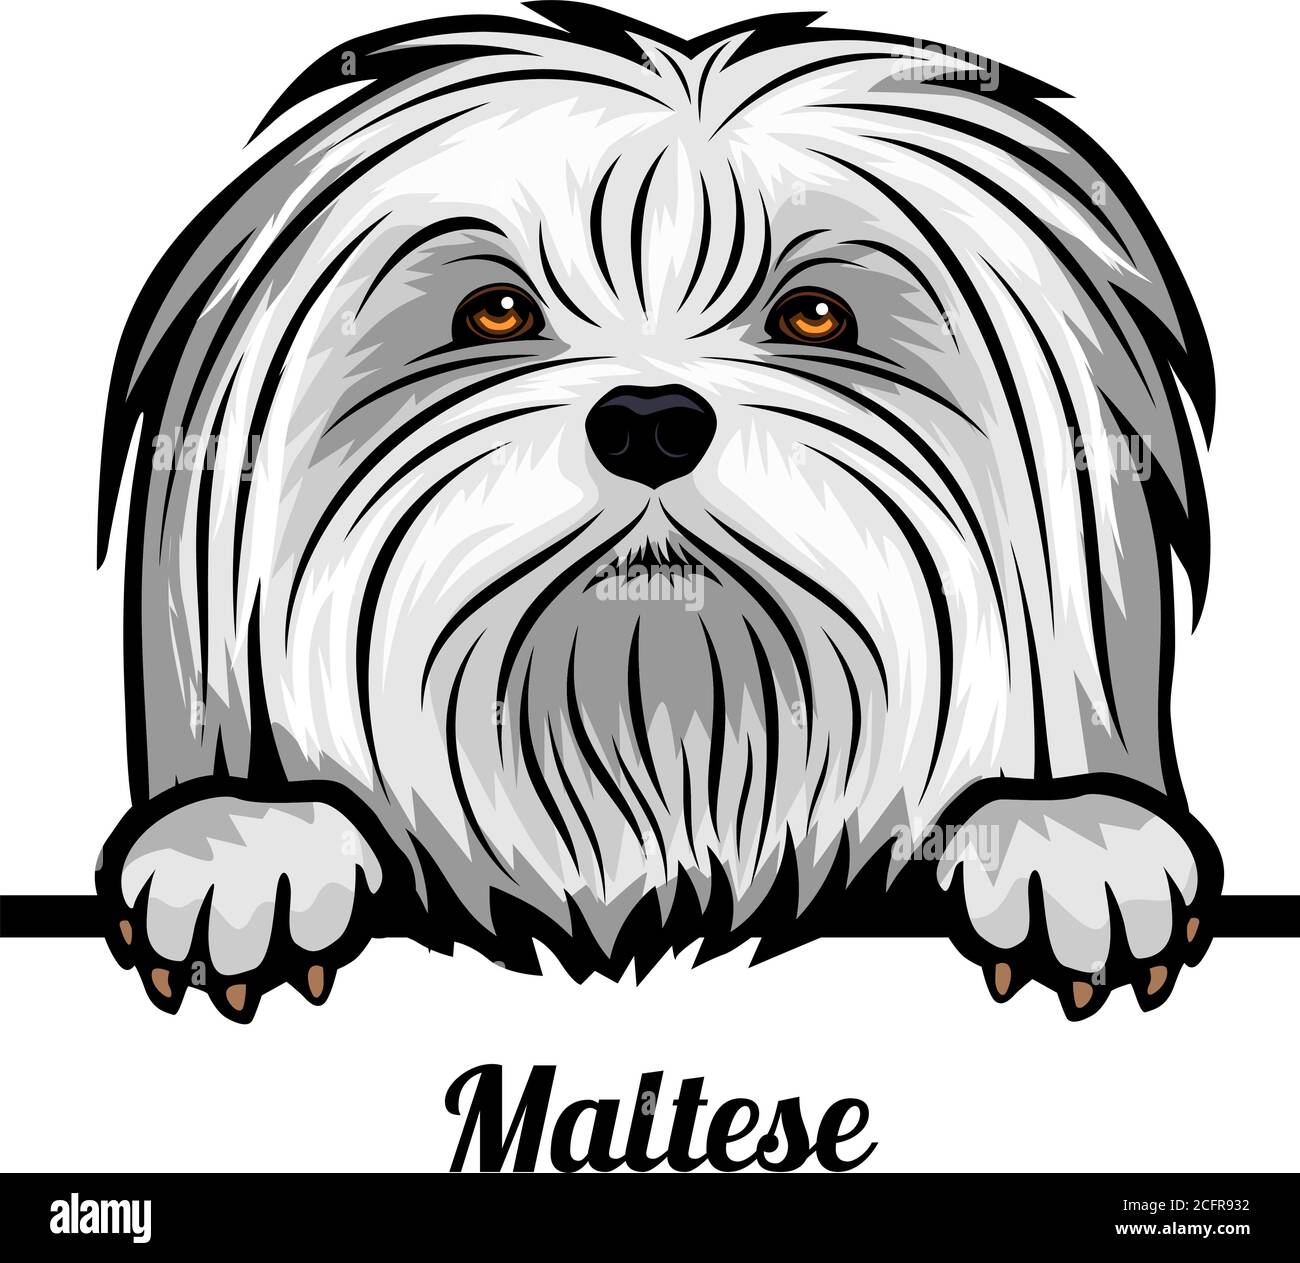 Capo maltese - razza di cane. Immagine a colori di una testa di cani isolata su uno sfondo bianco Illustrazione Vettoriale